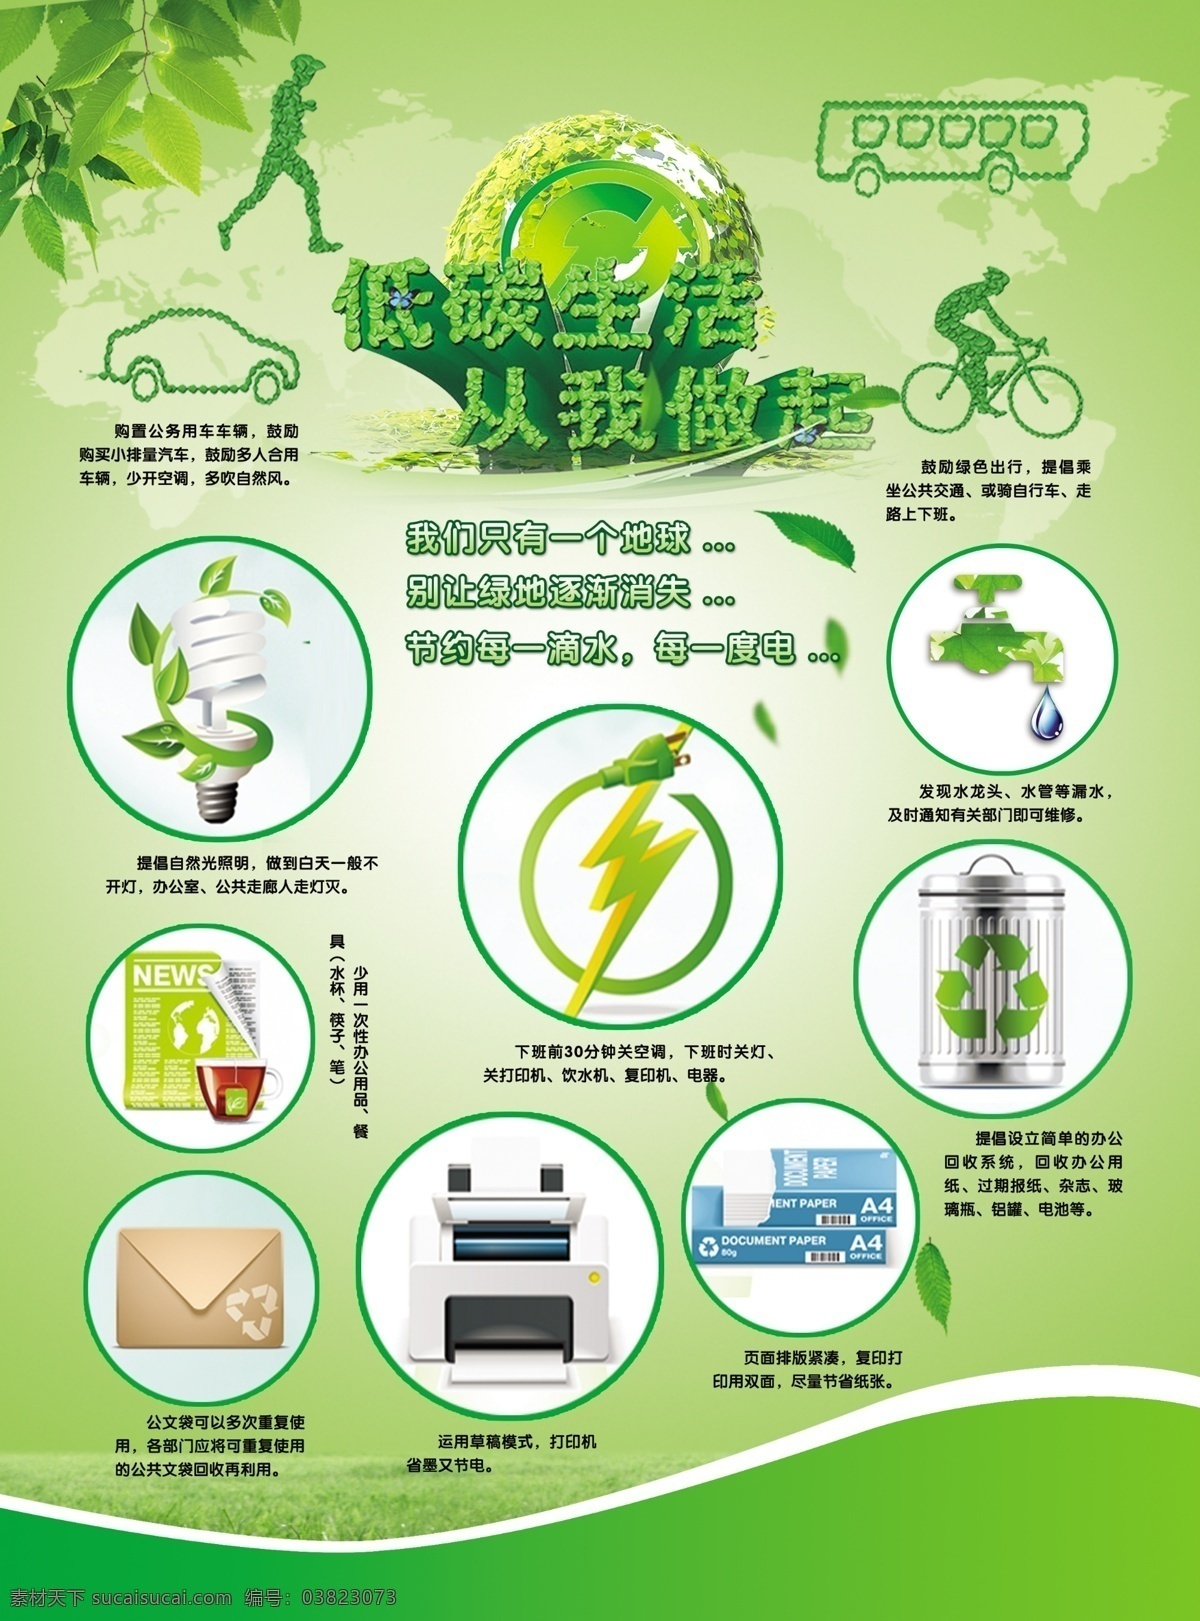 低 碳 生活 做起 海报 节能 低碳生活 绿色出行 环保 环境日 爱护环境